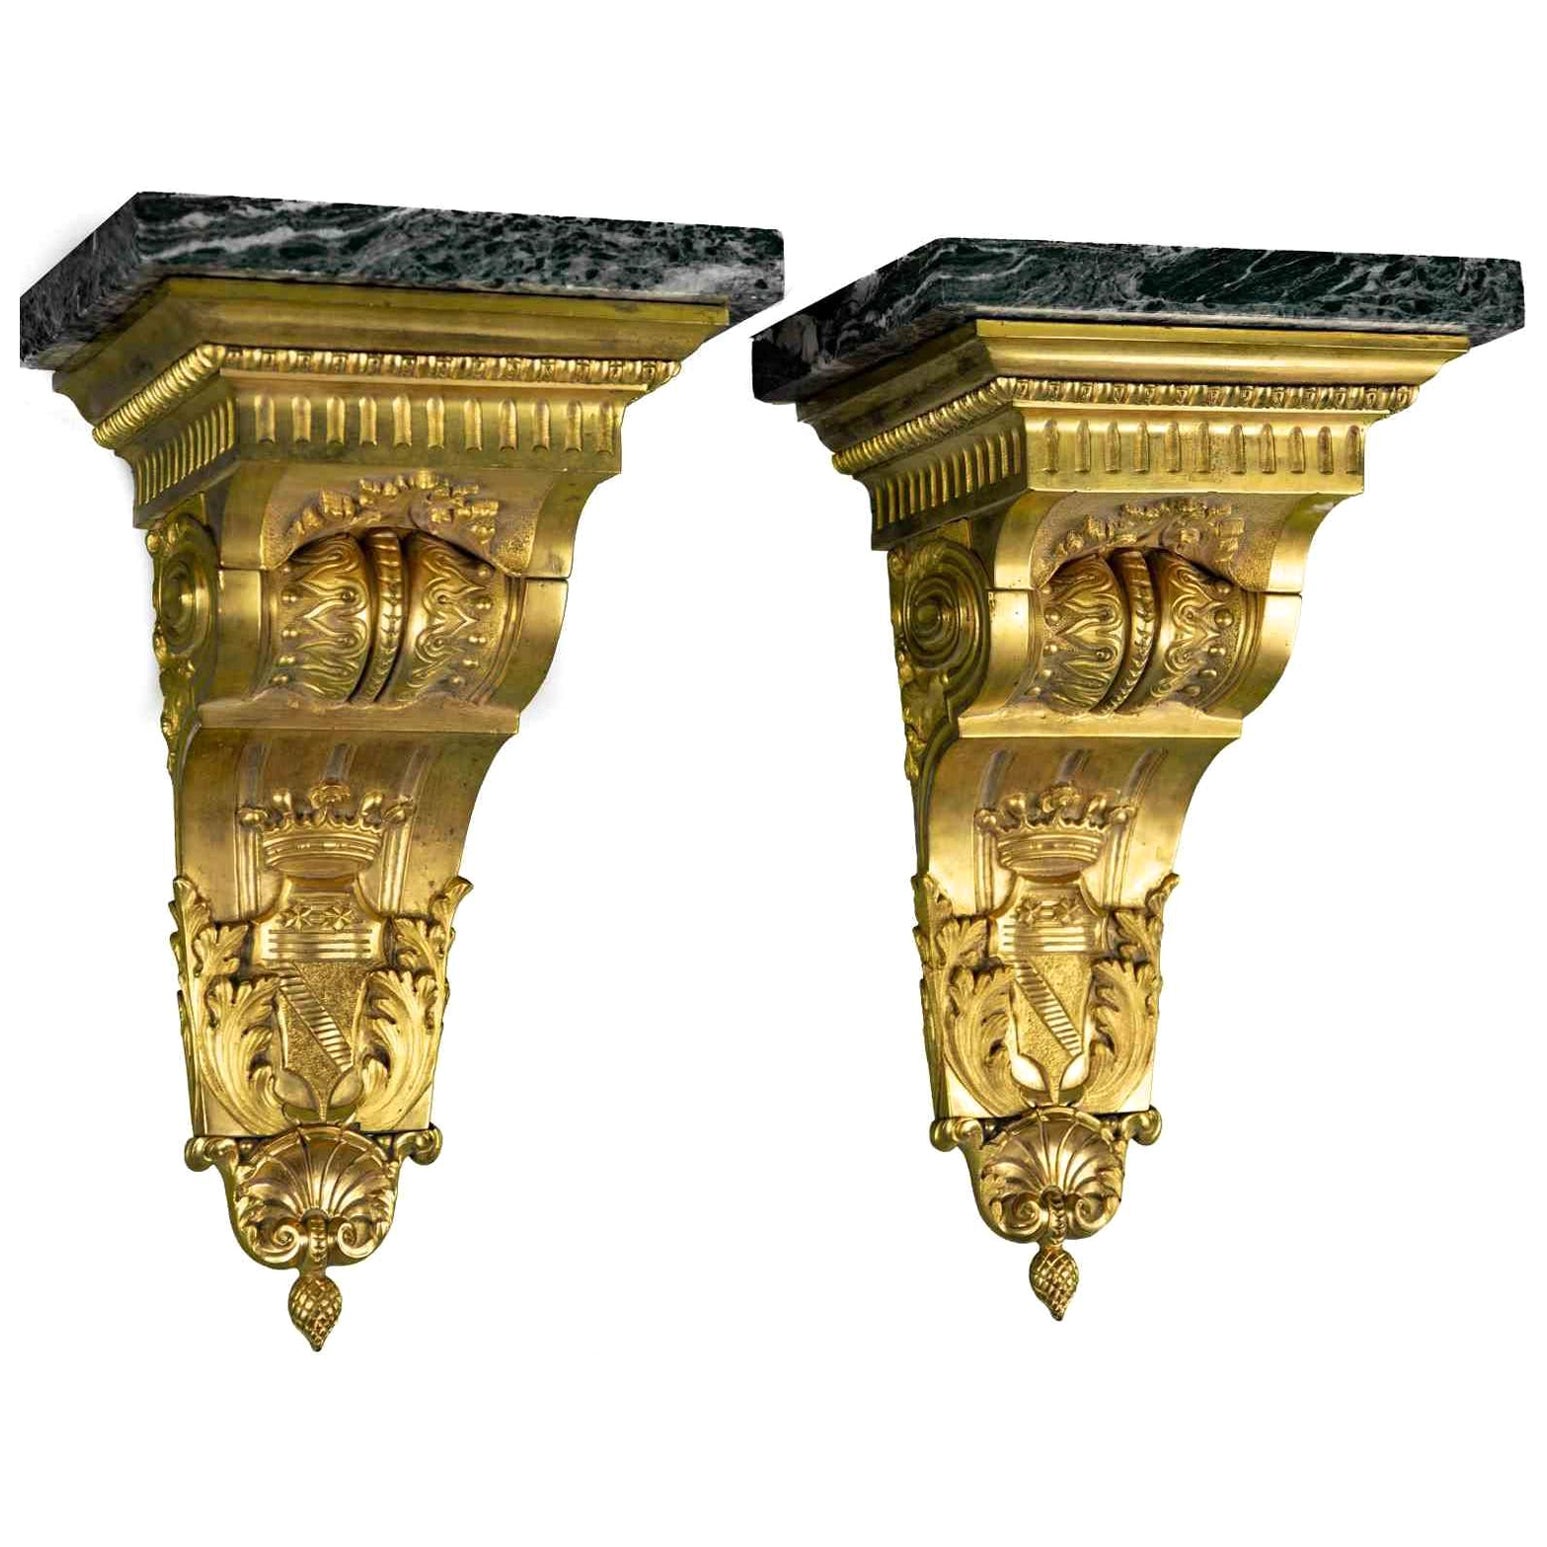 Regale aus Bronze, 14. Jahrhundert